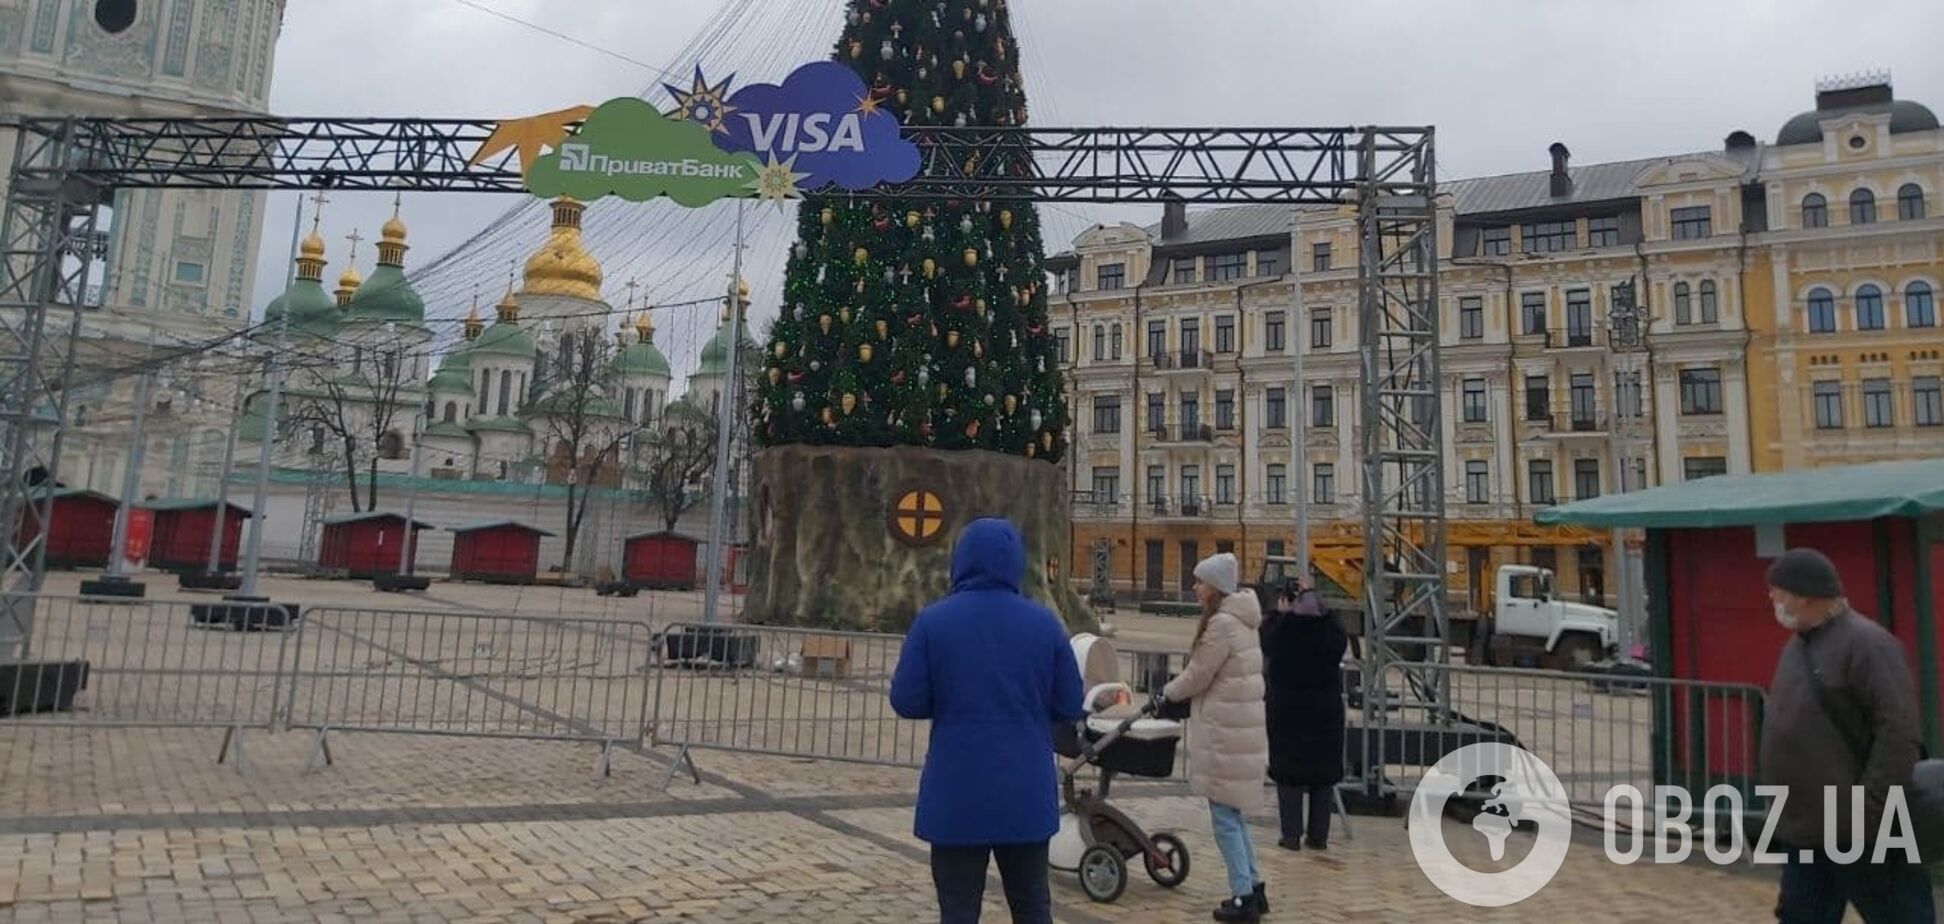 В Киеве начали разбирать главную елку Украины. Фото и видео